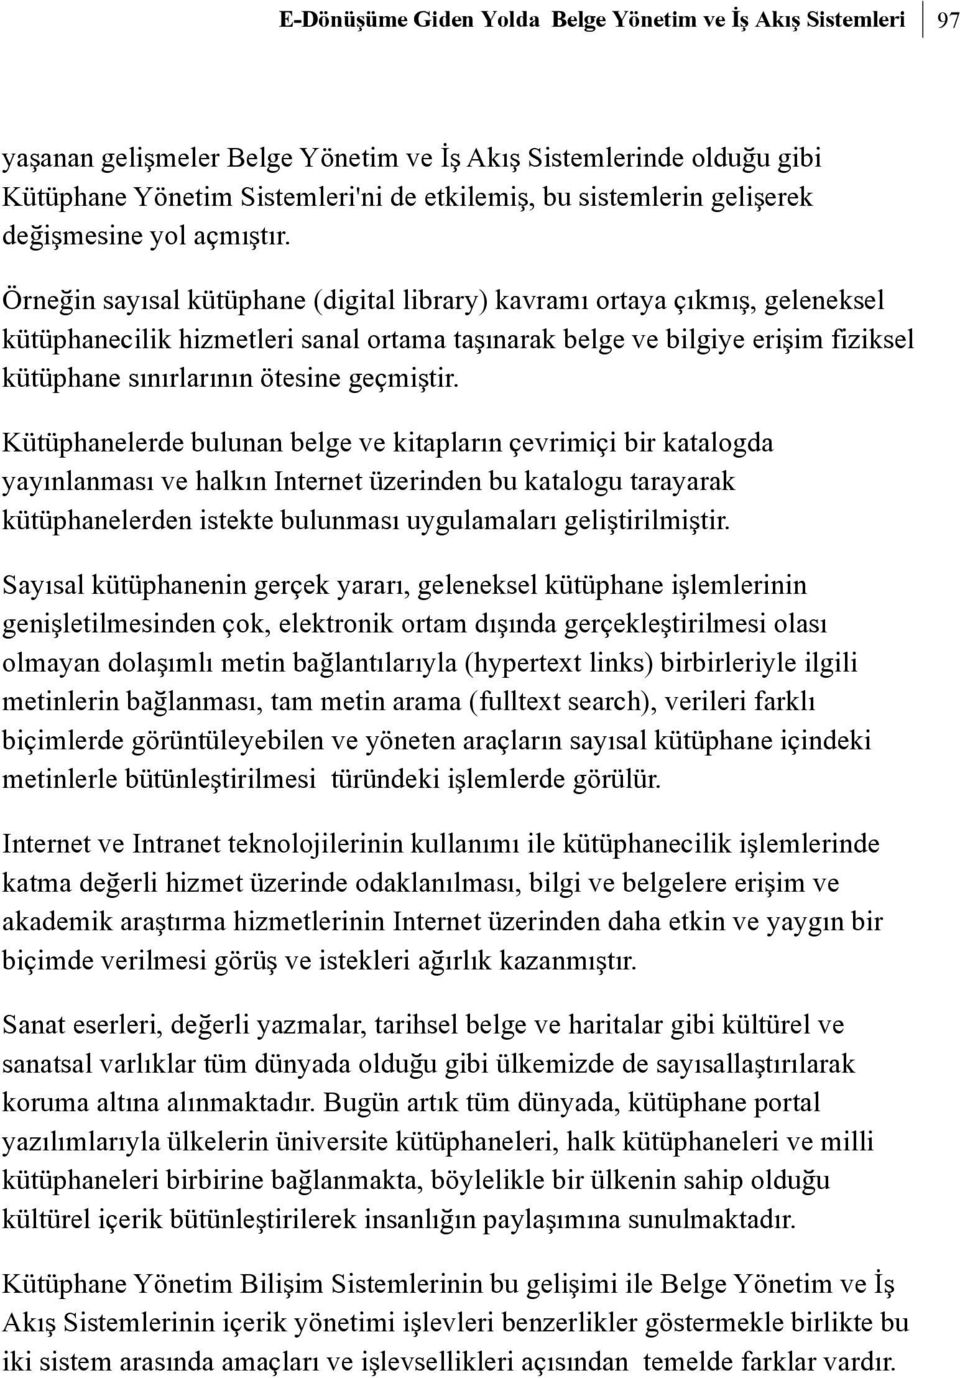 Örneðin sayýsal kütüphane (digital library) kavramý ortaya çýkmýþ, geleneksel kütüphanecilik hizmetleri sanal ortama taþýnarak belge ve bilgiye eriþim fiziksel kütüphane sýnýrlarýnýn ötesine